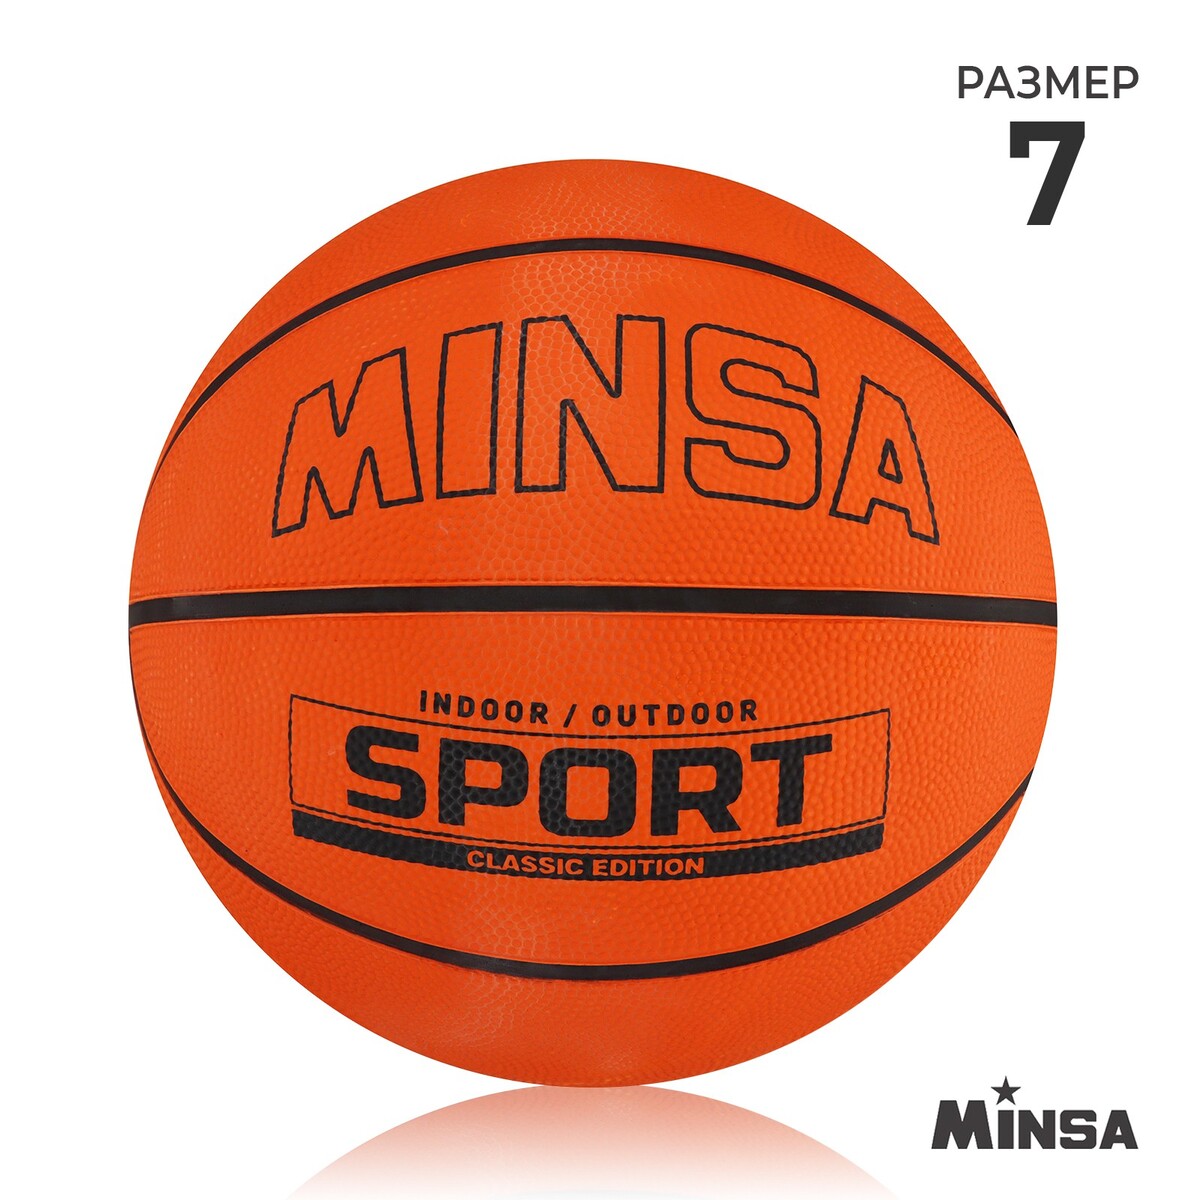 Мяч баскетбольный minsa sport, пвх, клееный, 8 панелей, р. 7 мяч баскетбольный minsa sport пвх клееный 8 панелей р 5